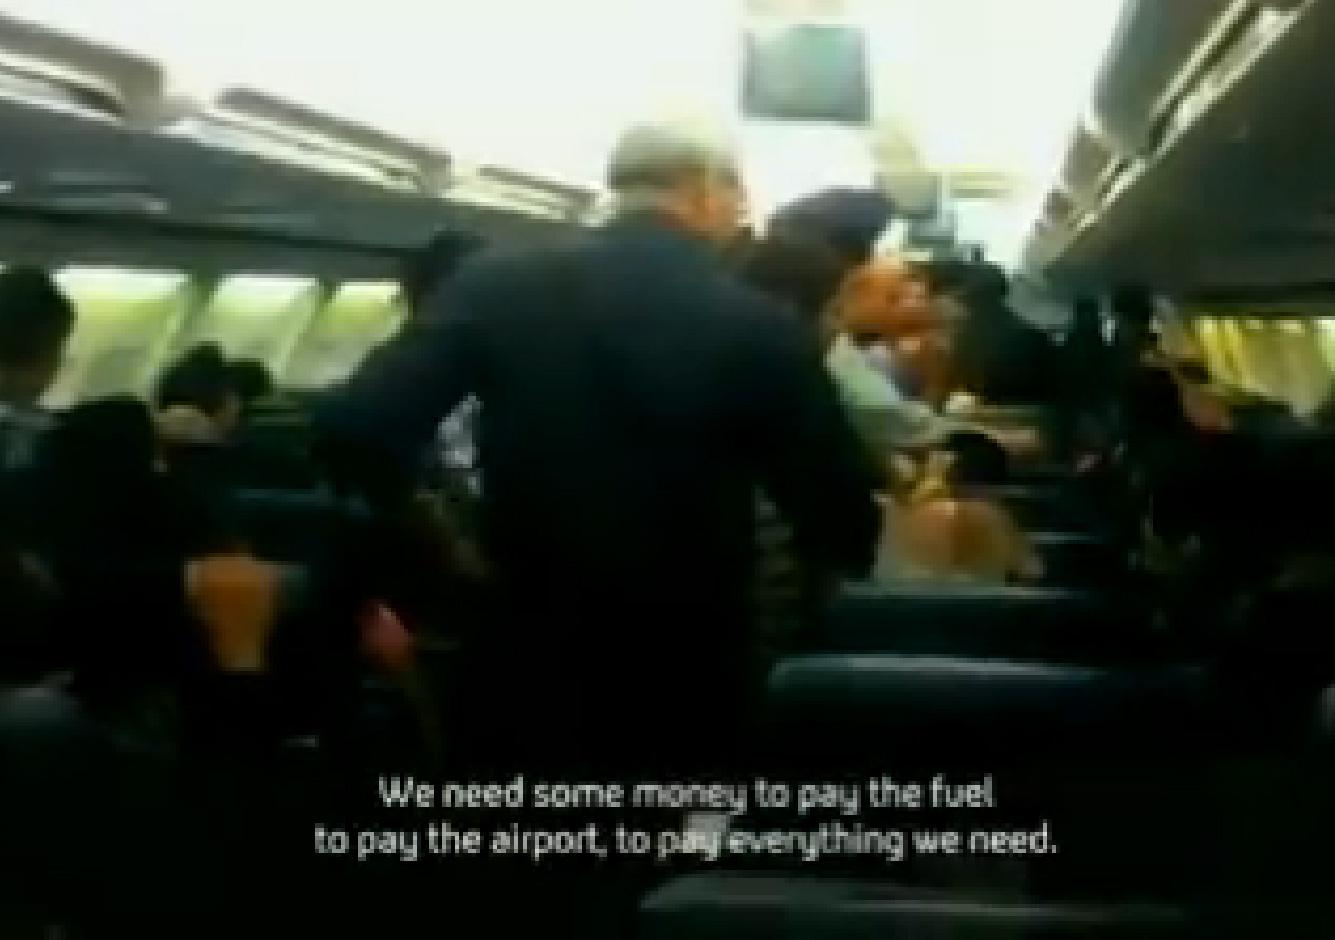 "Vi behöver lite pengar (cirka 250 000 kr reds. anm.) för att betala bränslet, betala flygplatsen, betala allt vi behöver", säger flygvärdinnan